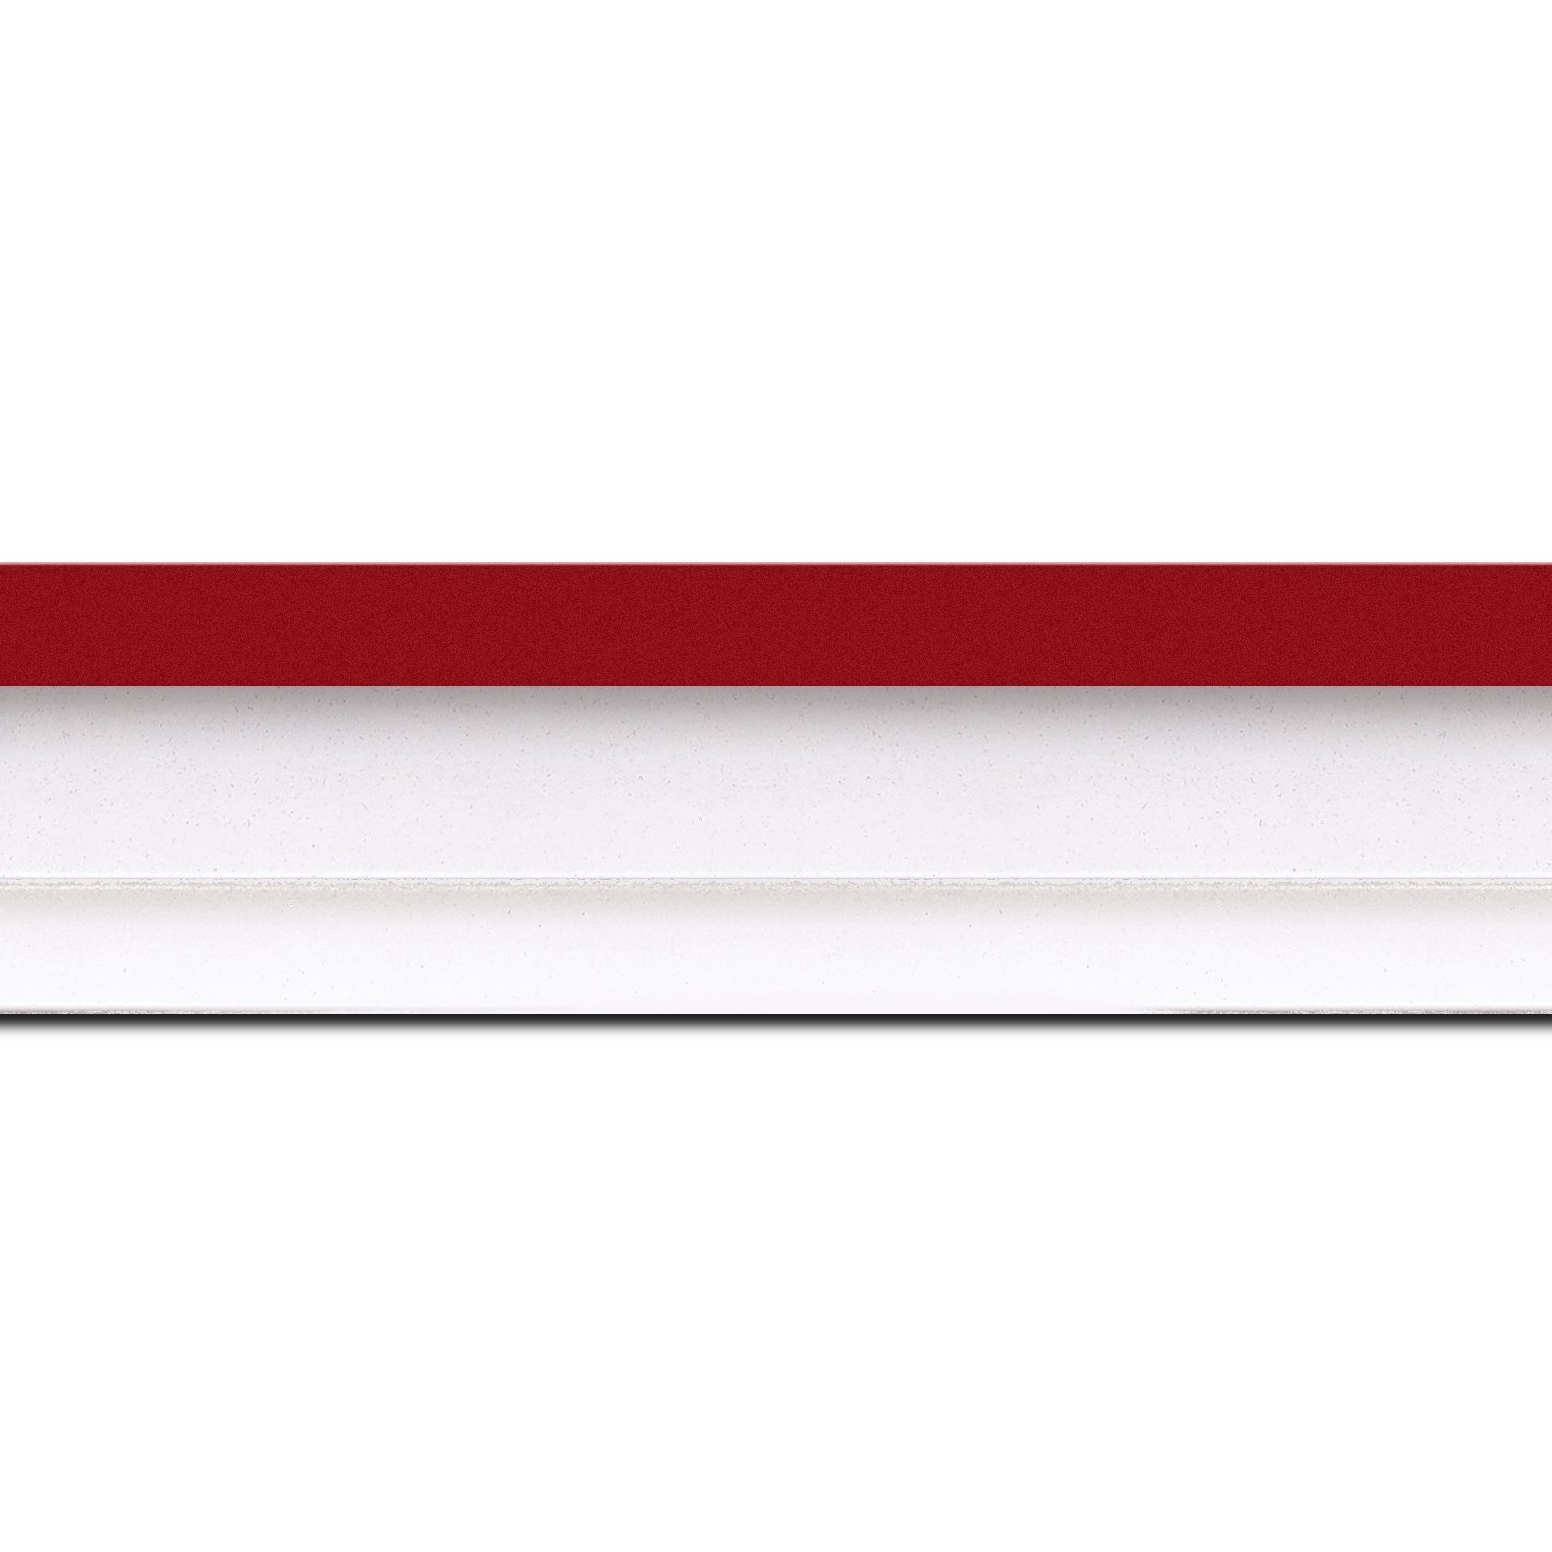 Caisse américaine pour peintures  americaine bois blanc rouge — 50 x 65